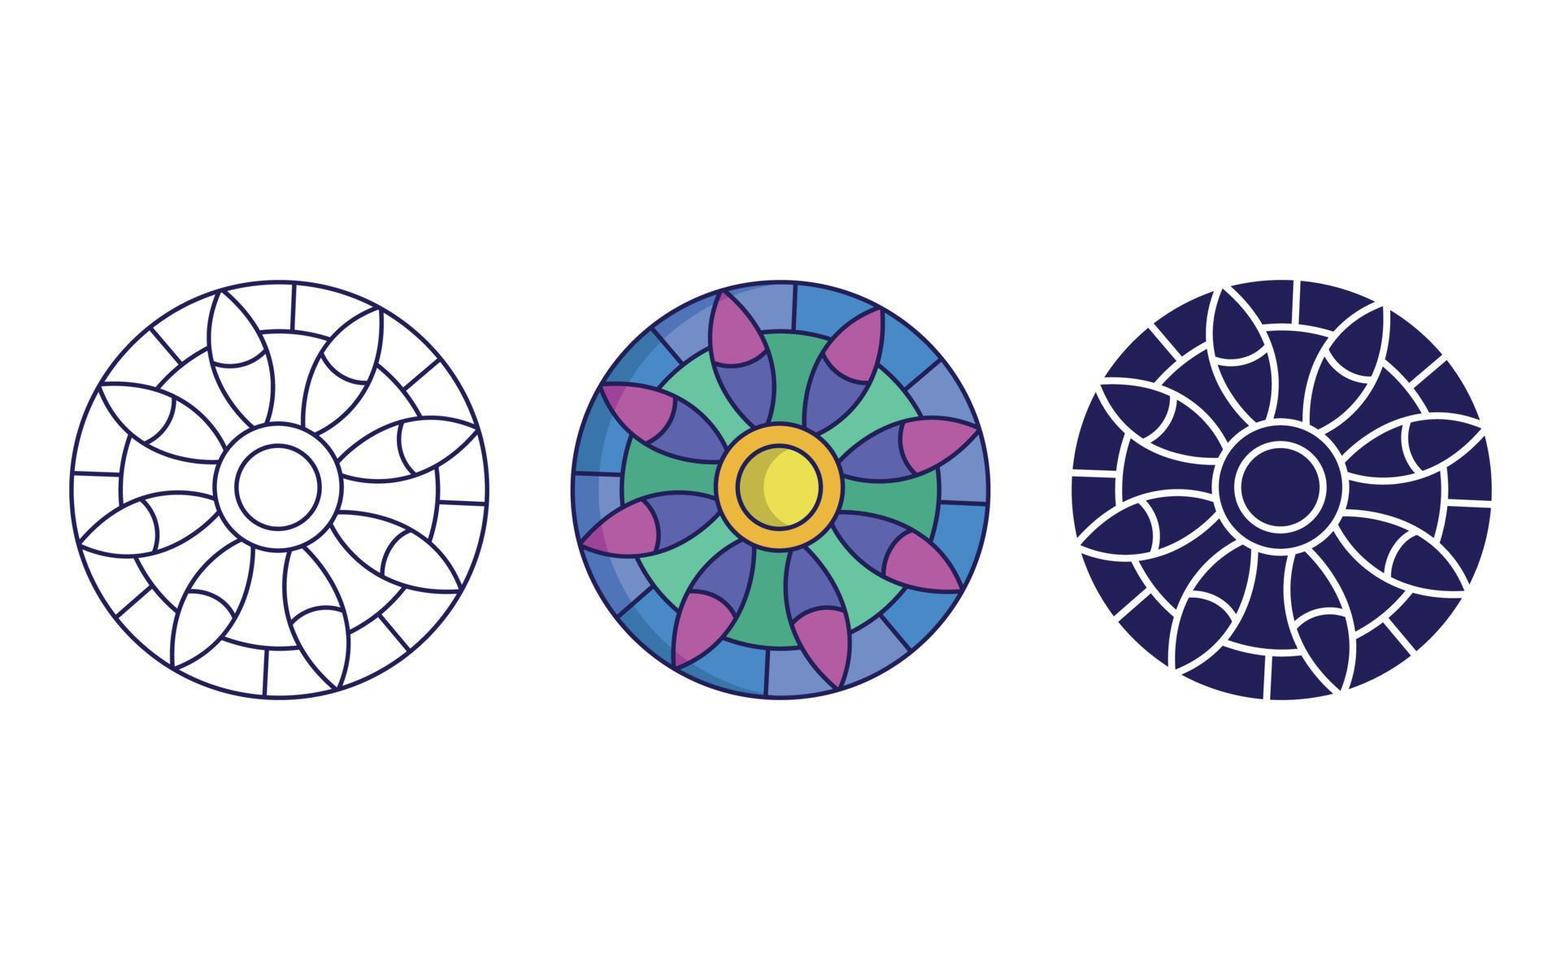 diseño de icono de mandala, vector de ornamento geométrico